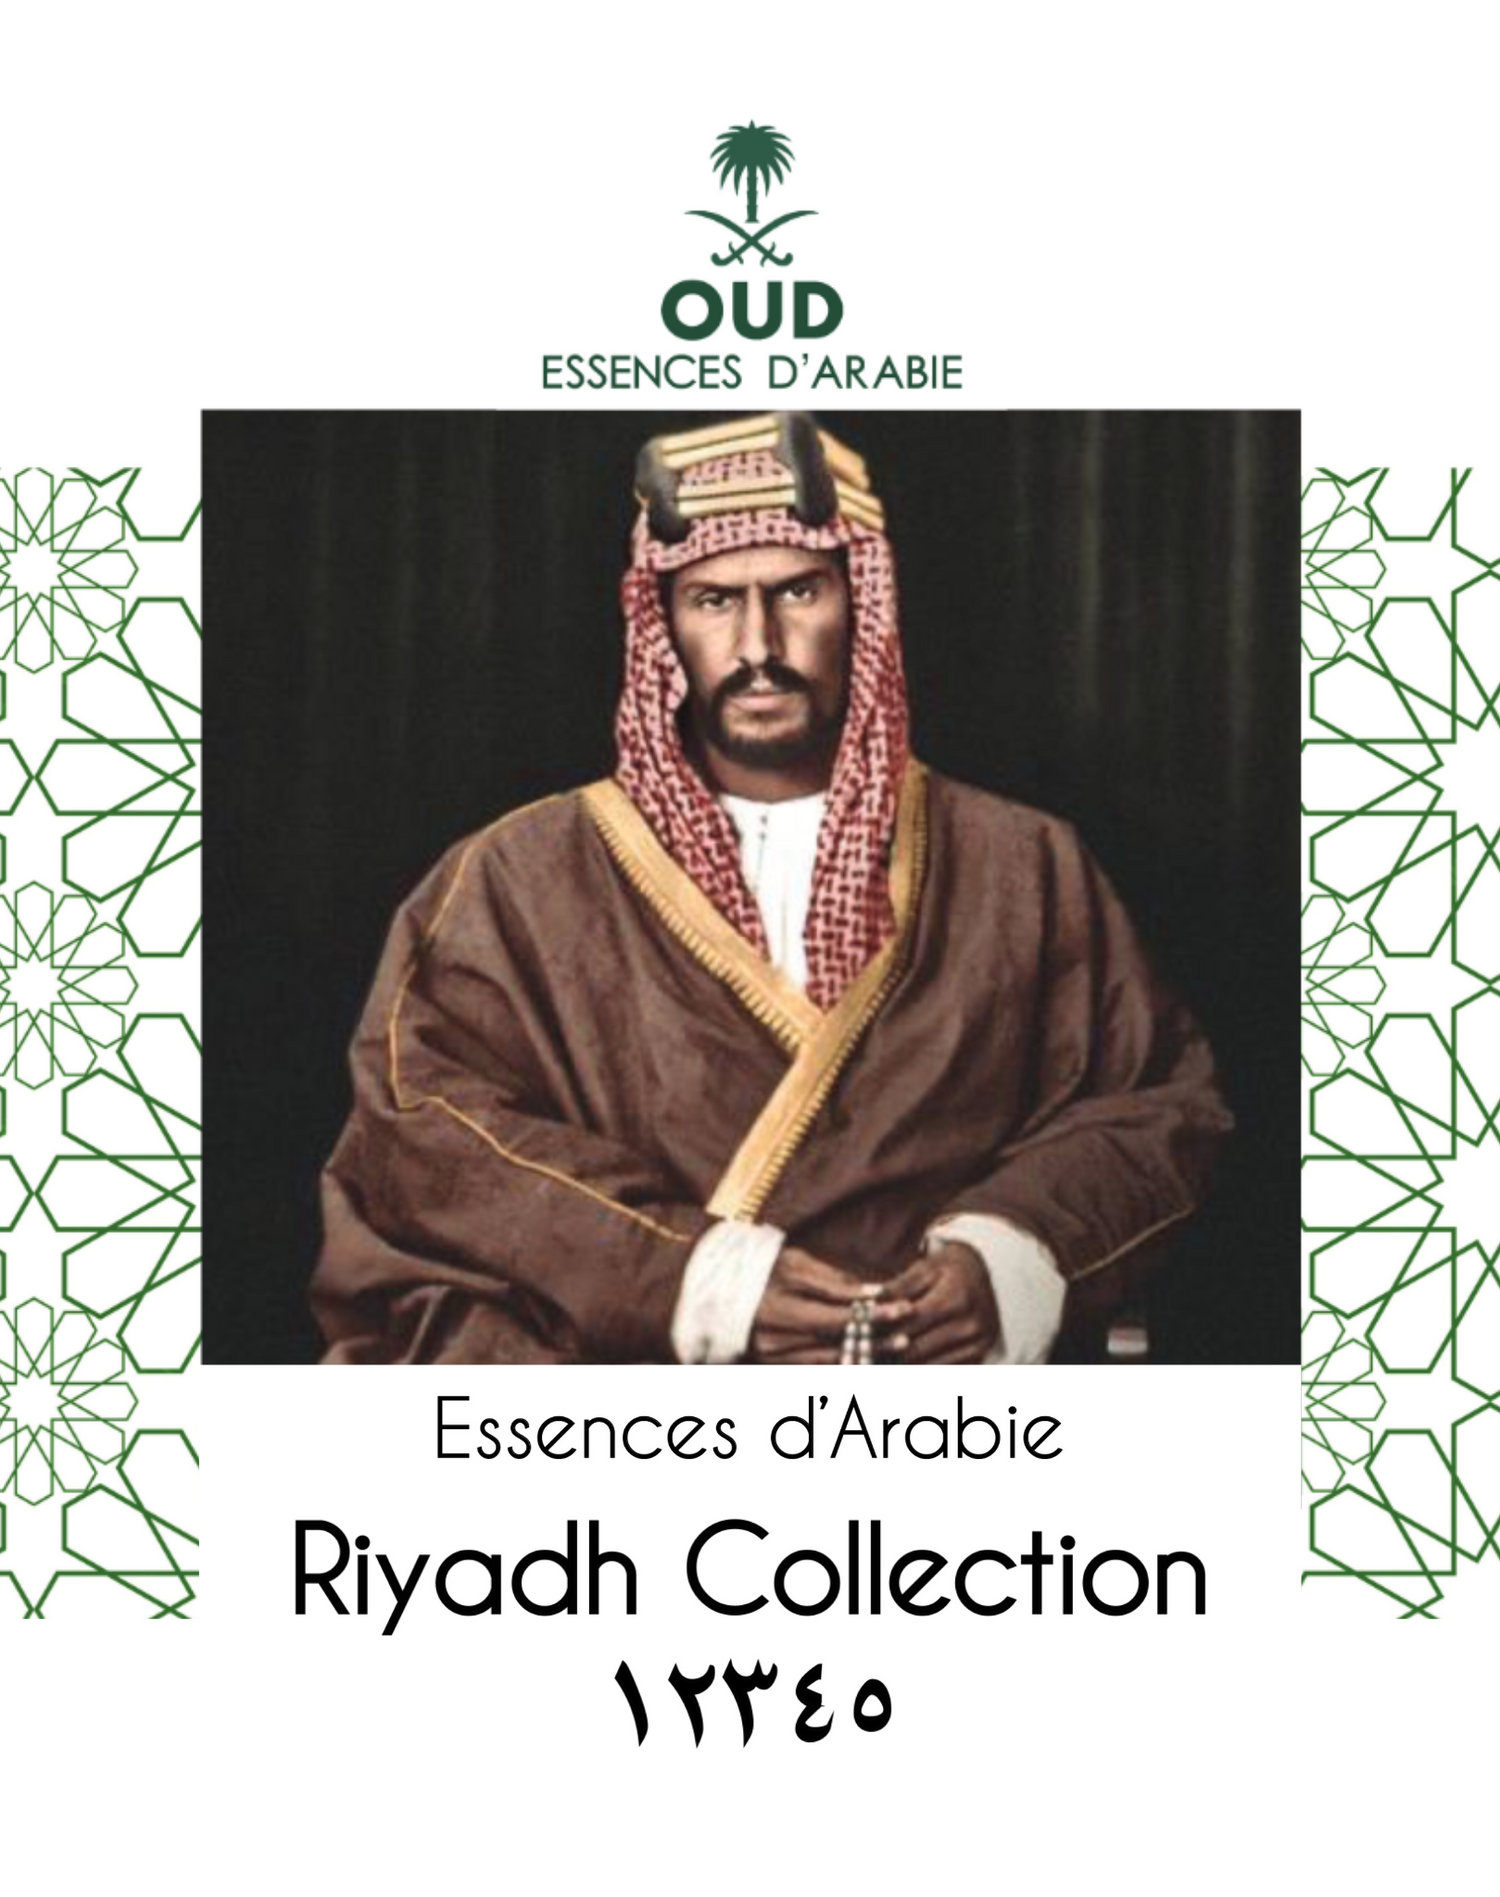 Riyadh Collection 12345 - KSA